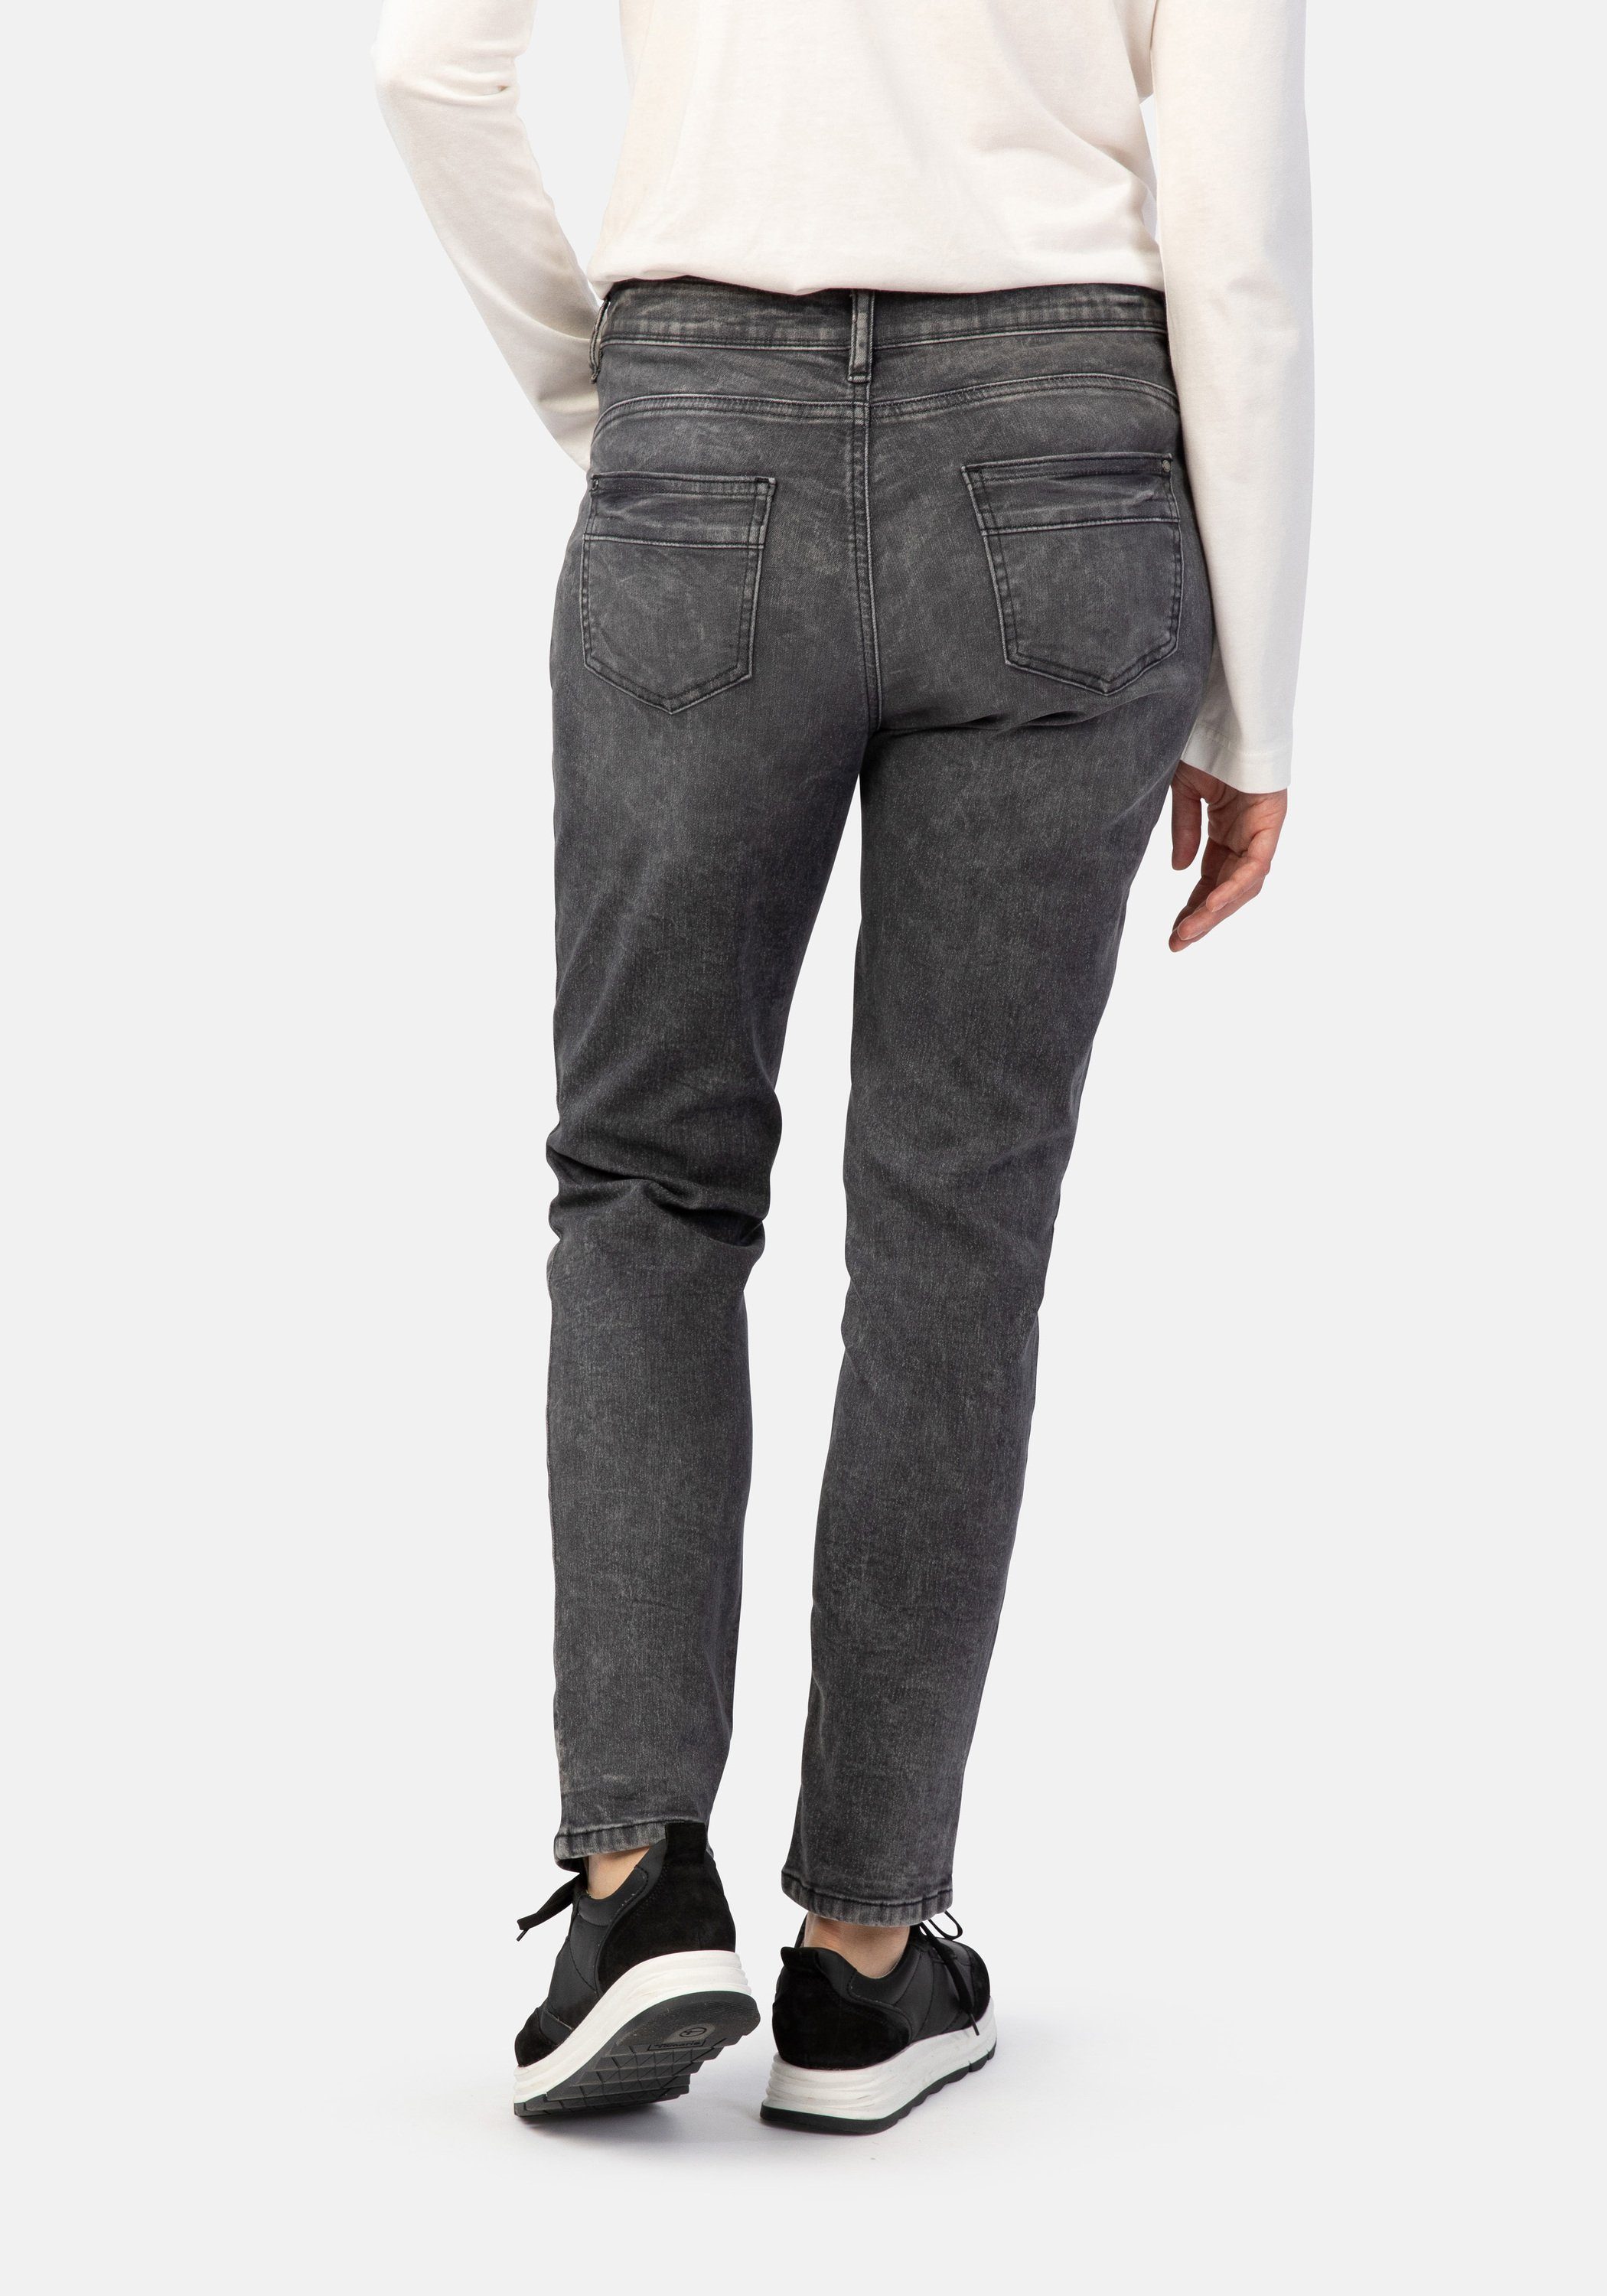 Davos WOMEN Boyfriend-Jeans random STOOKER Boyfriend Grey Fit used Denim denim